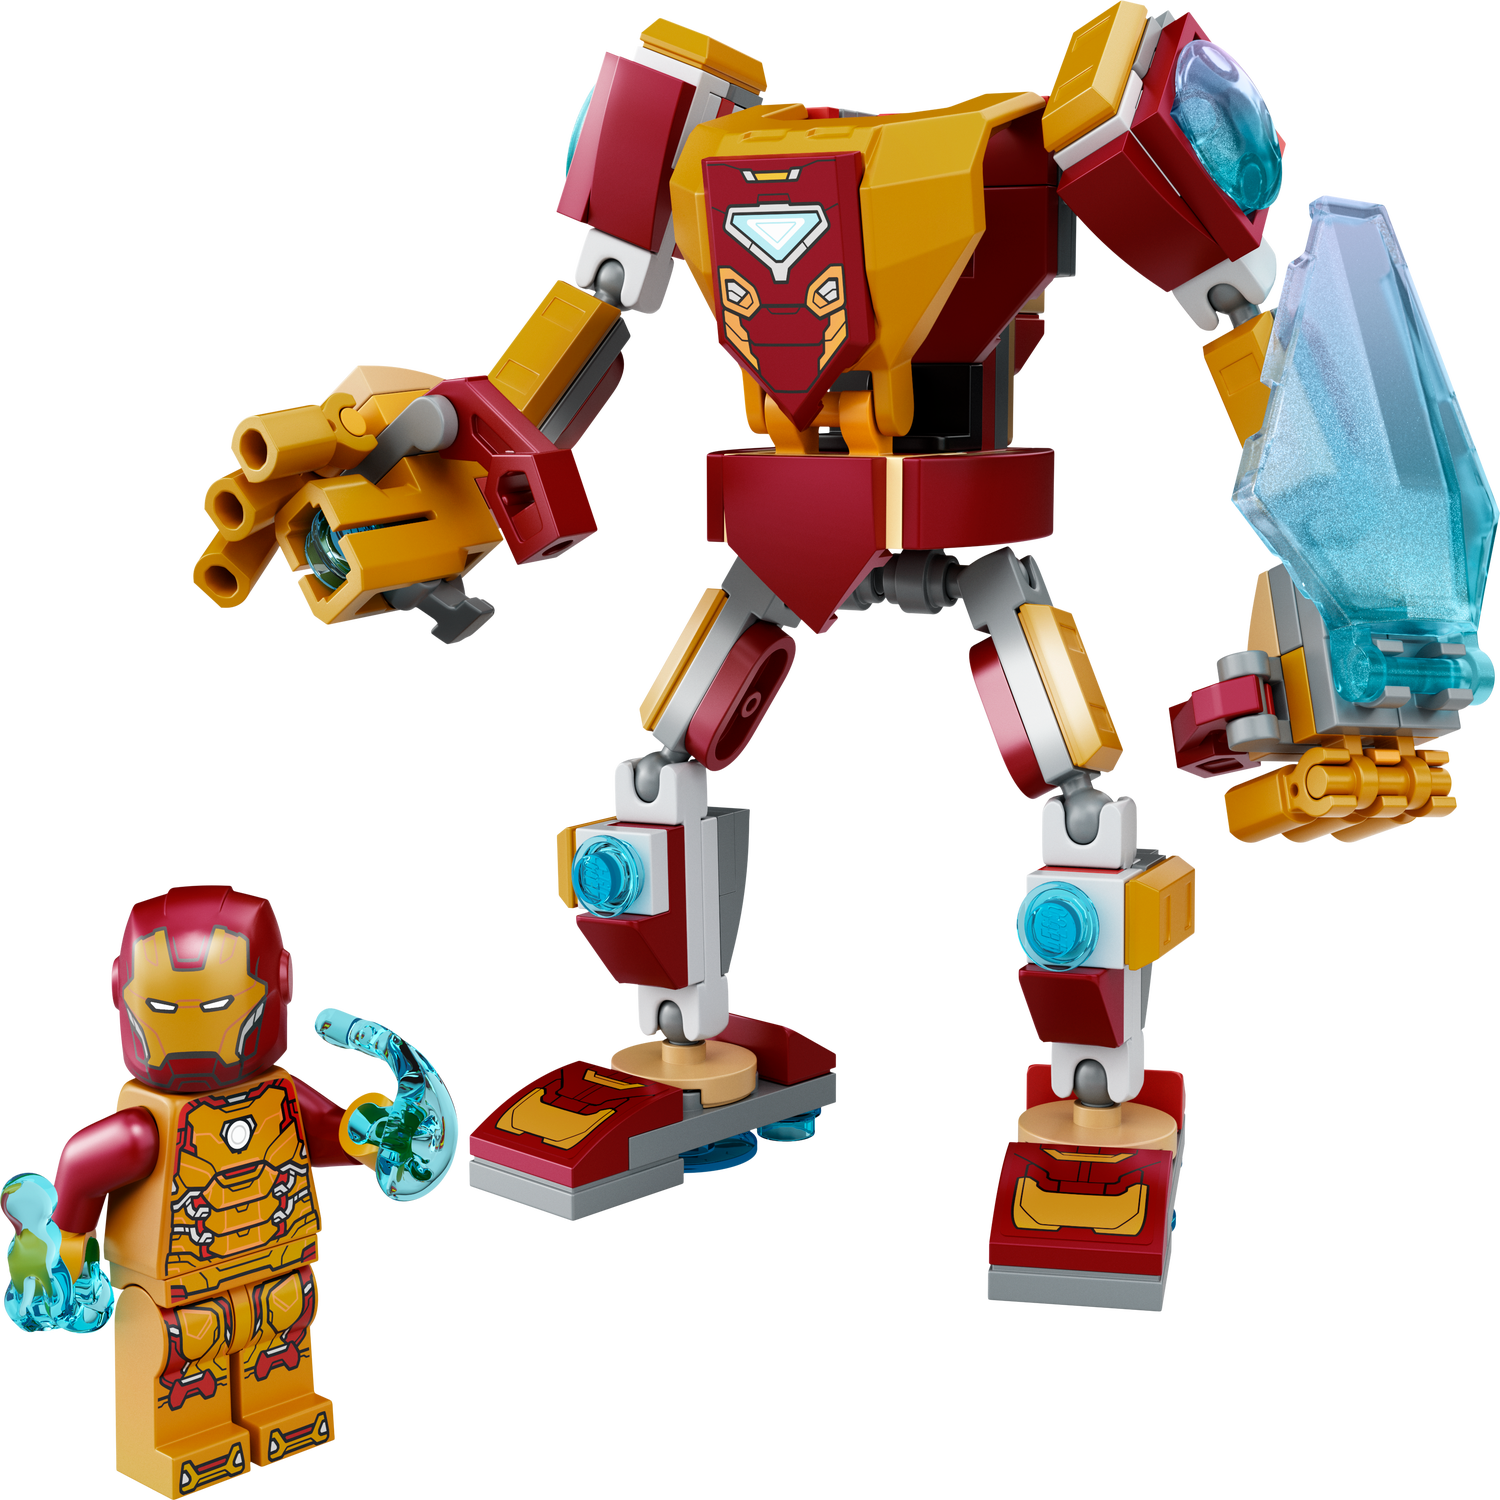 Iron Man robotrustning 76203 | Marvel | Official LEGO® Shop SE